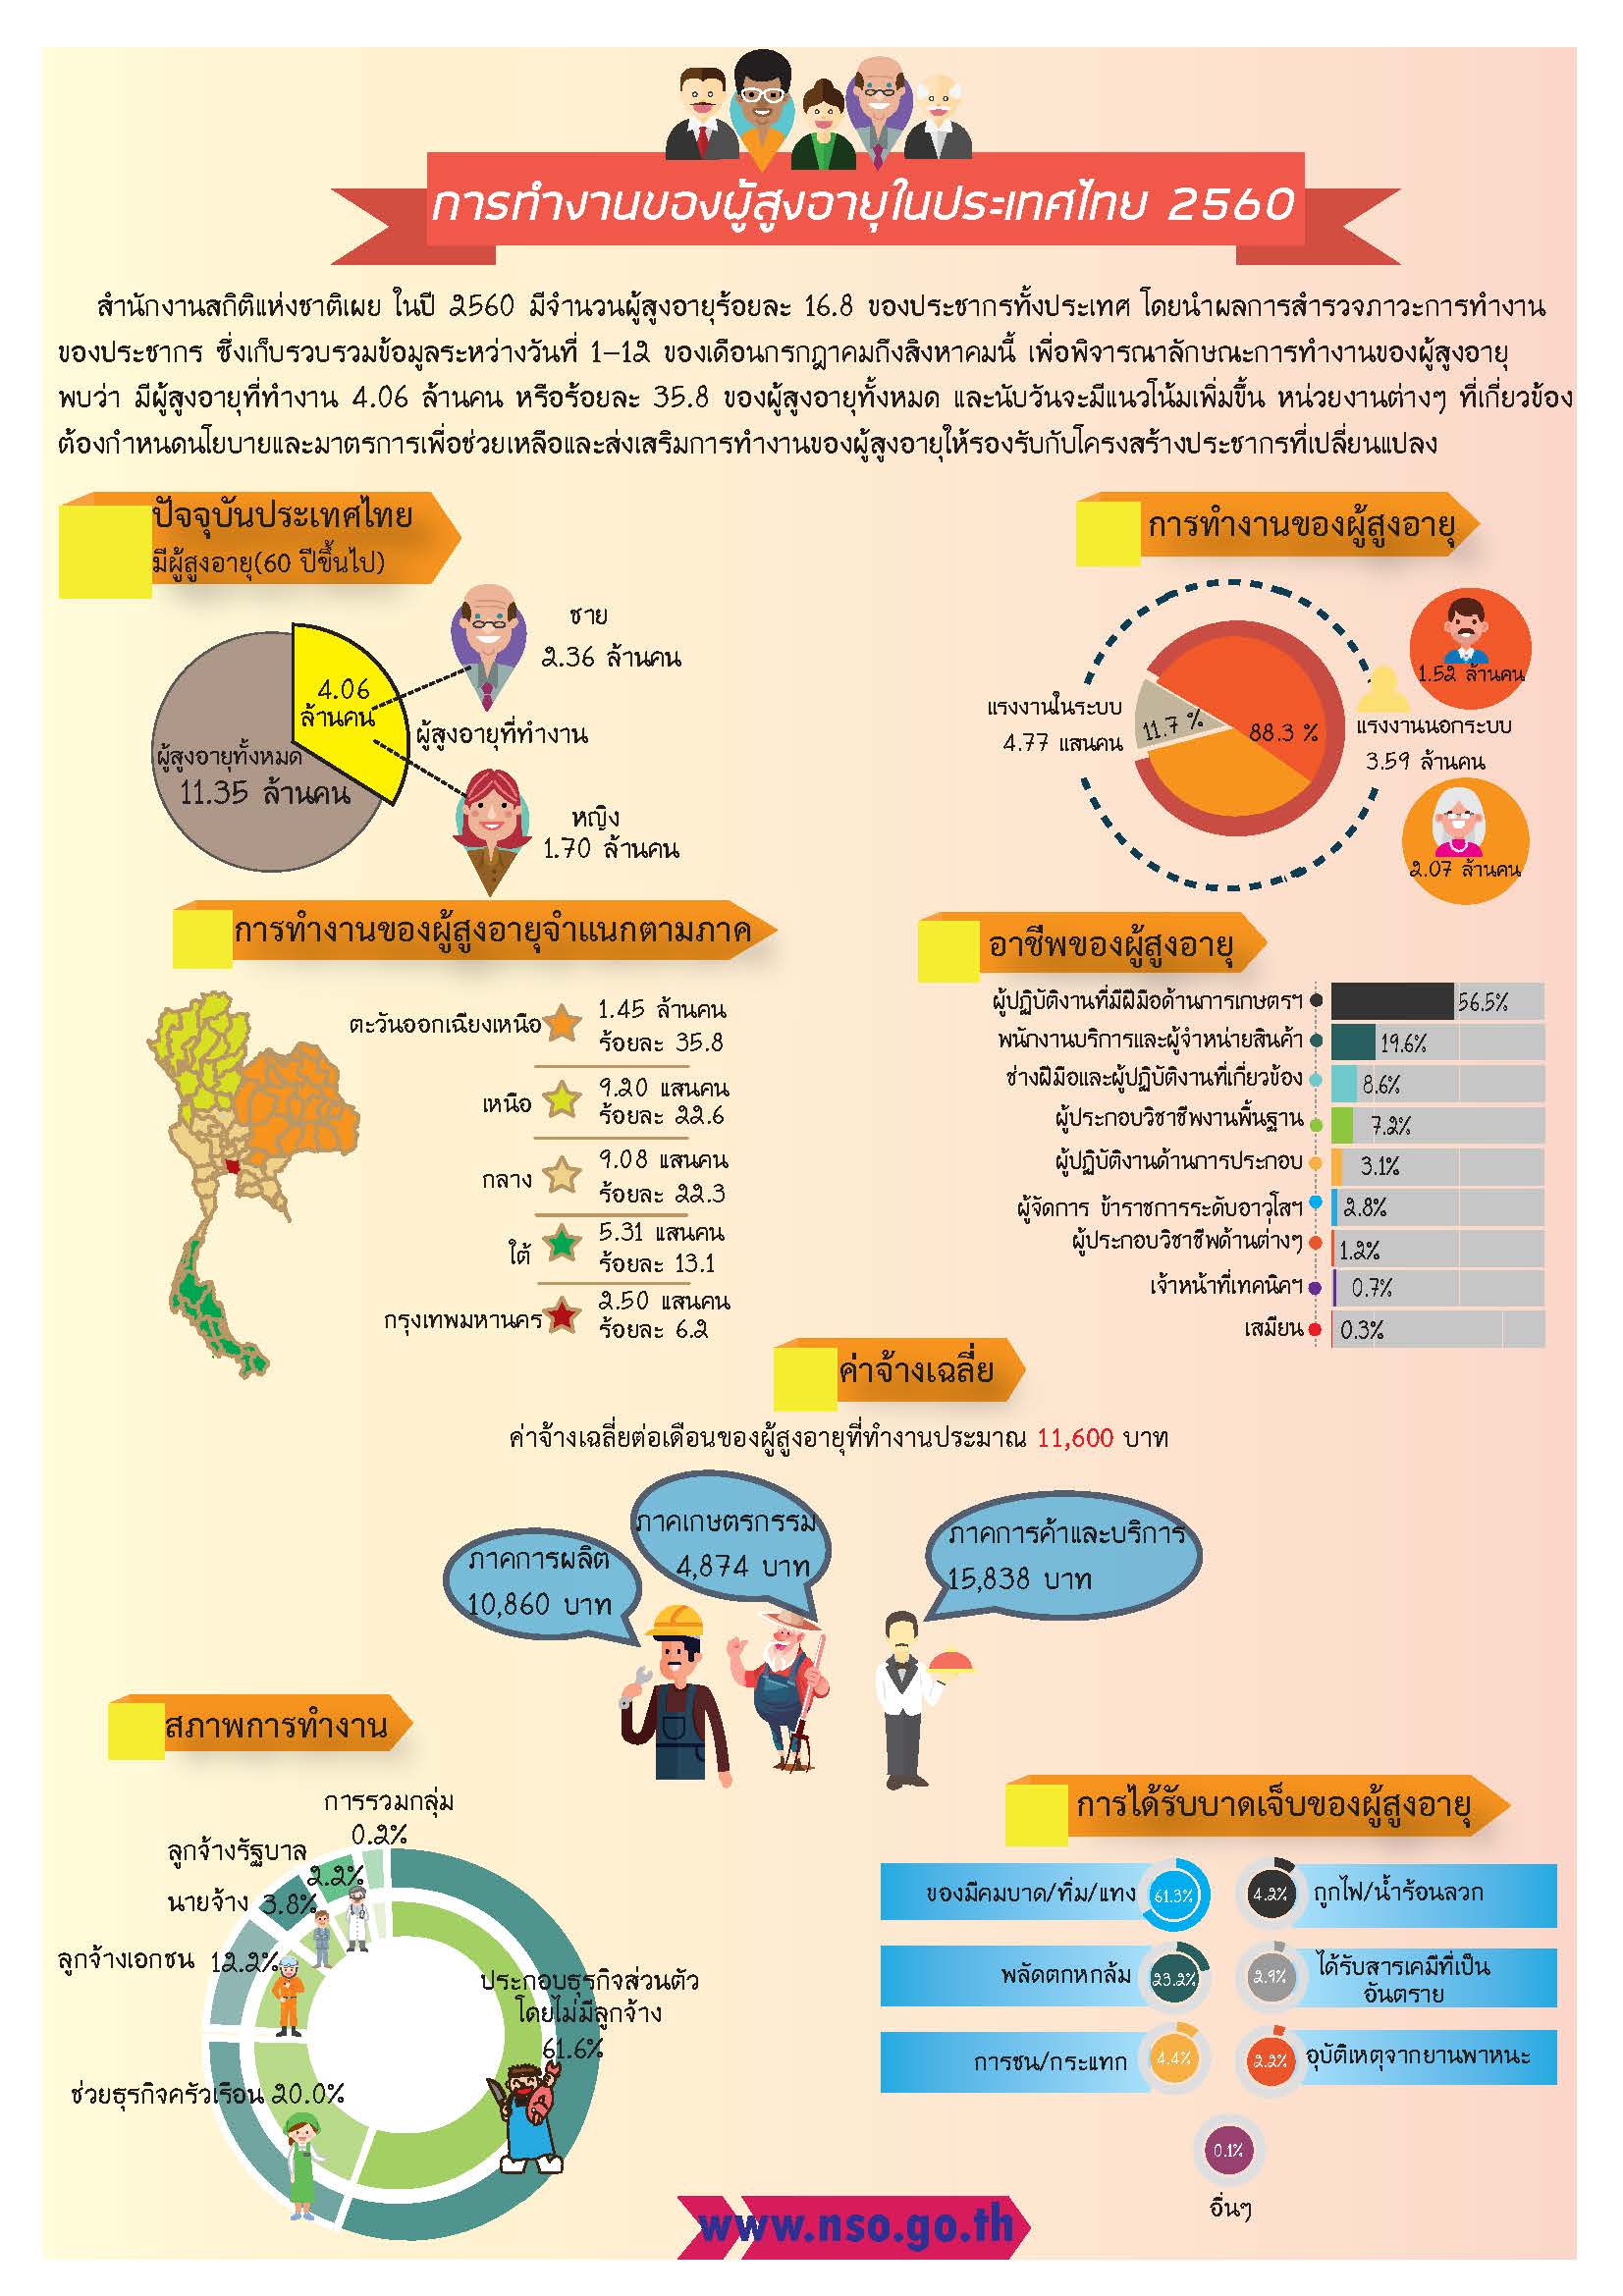 การทำงานของผู้สูงอายุในประเทศไทย 2560 สำนักงานสถิติแห่งชาติ